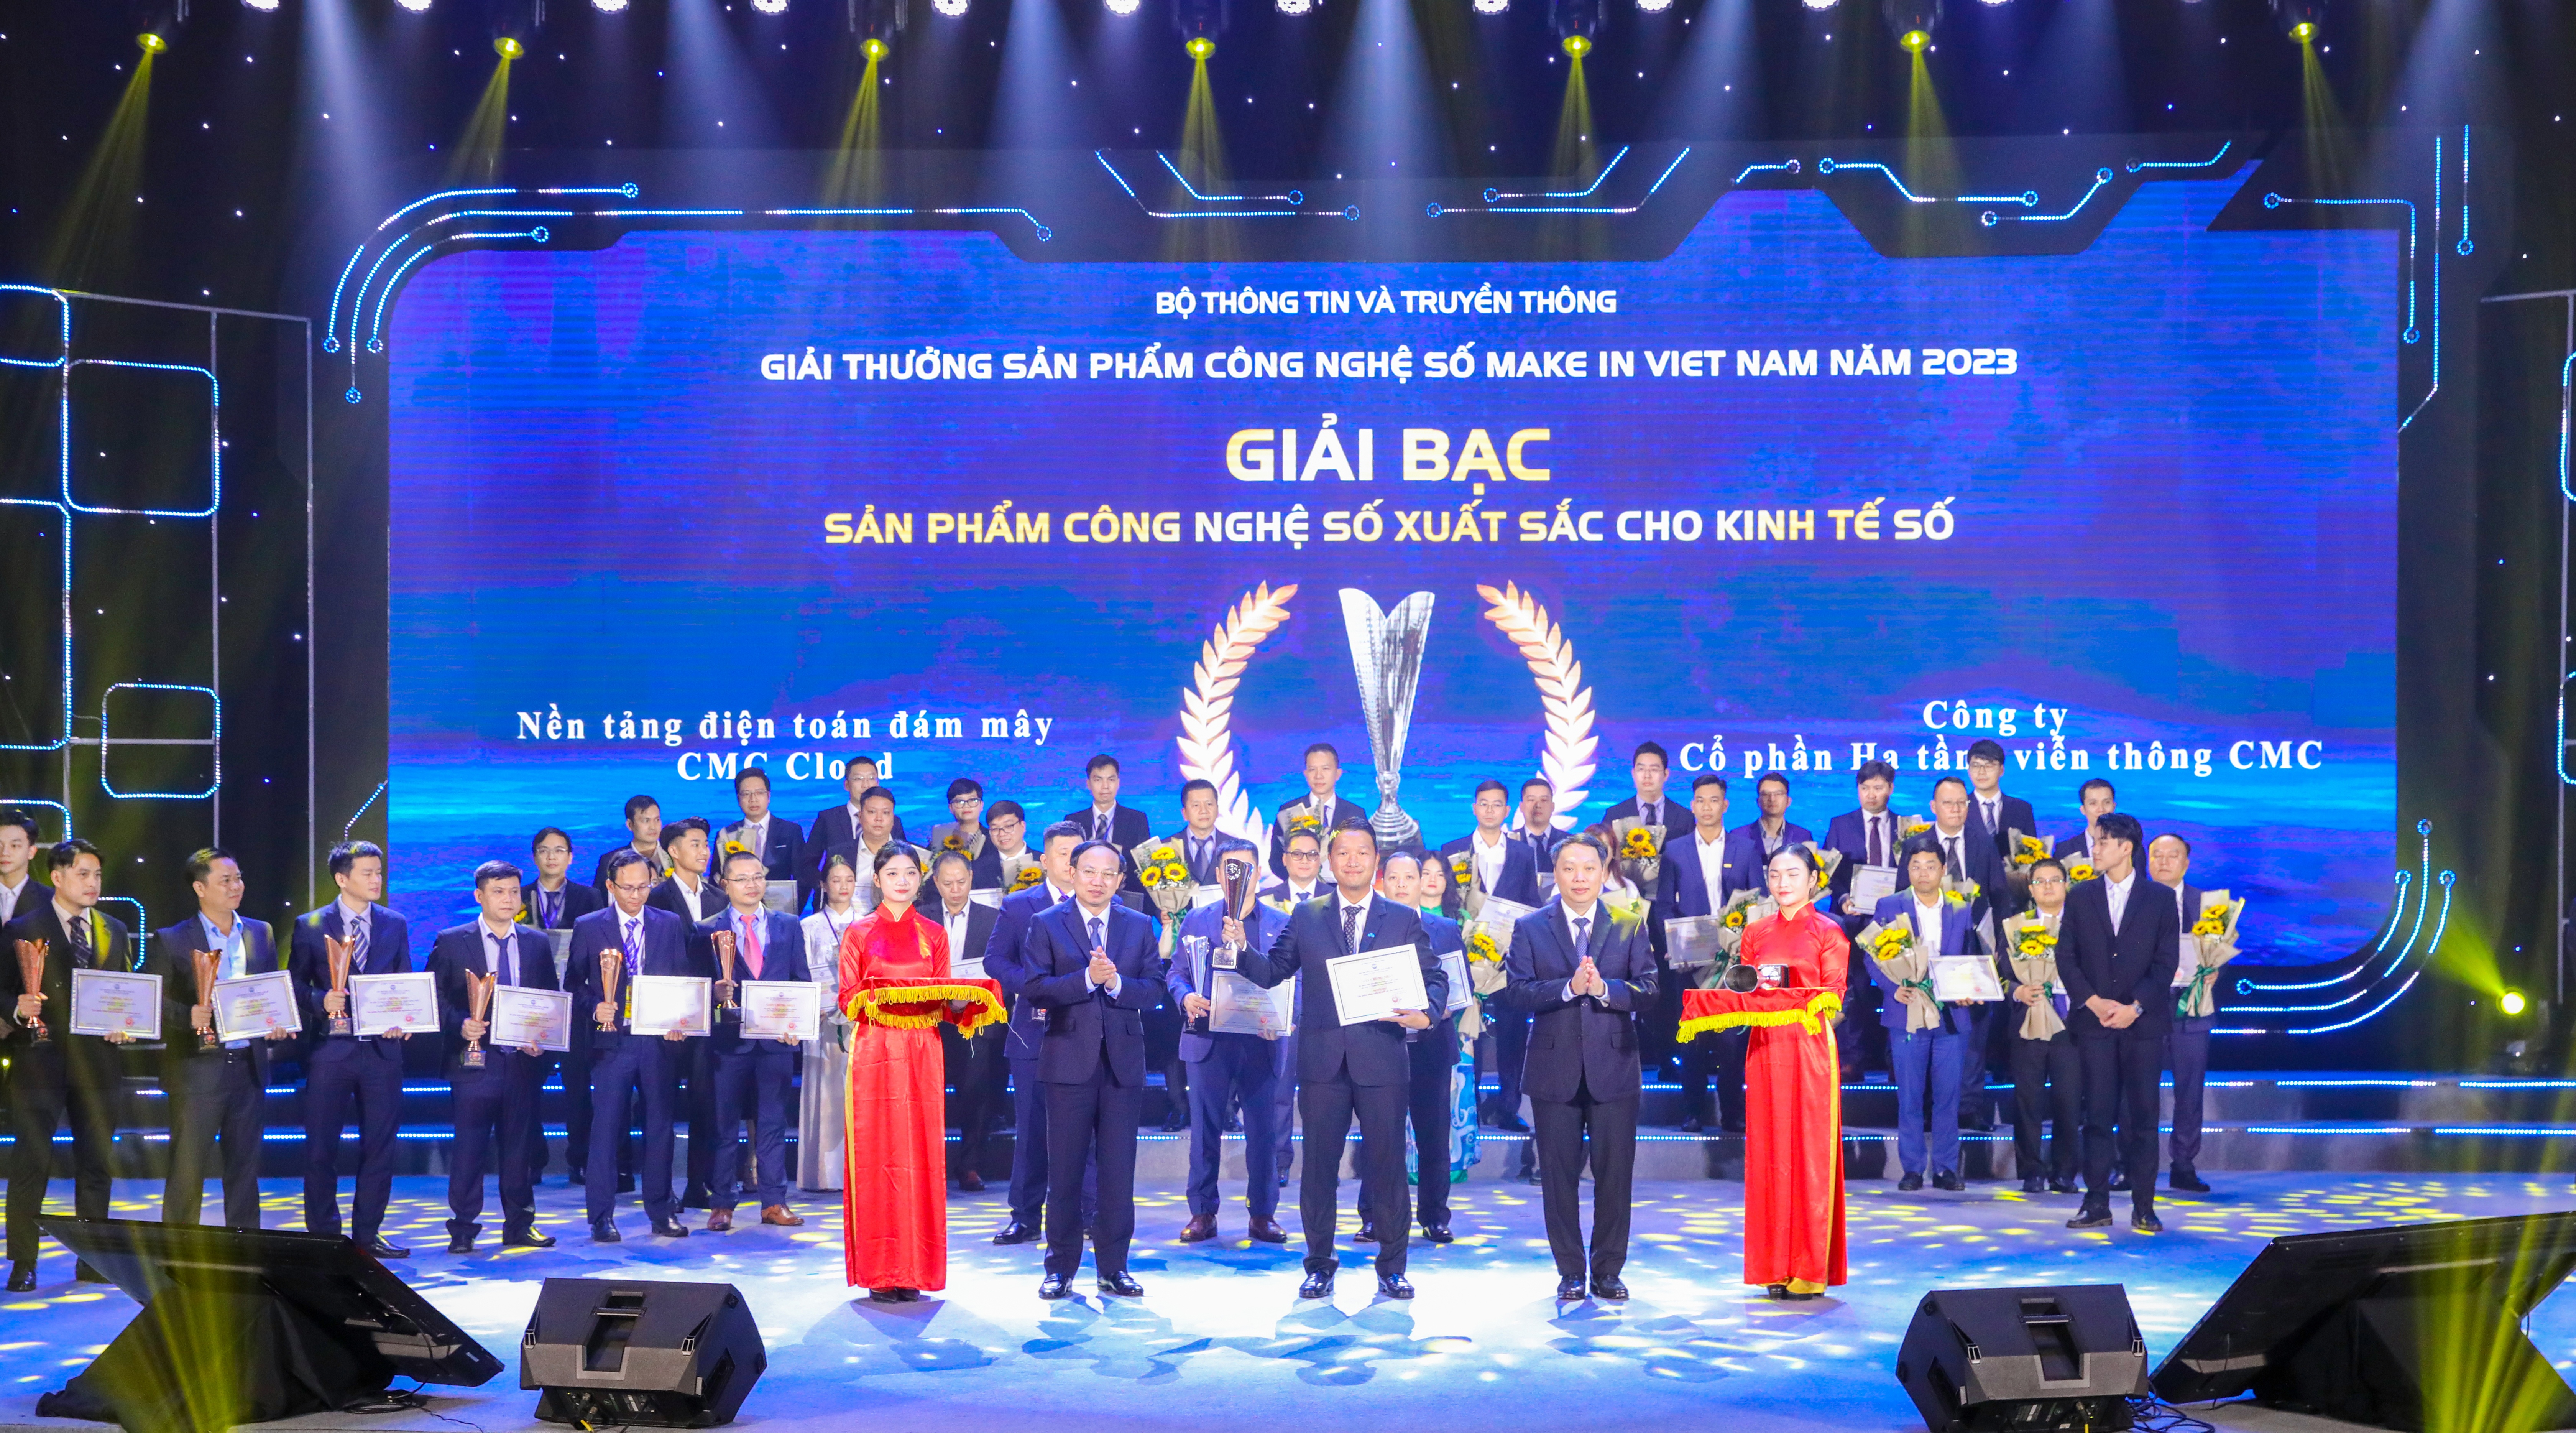 Ông Đặng Tùng Sơn - Phó tổng giám đốc kiêm Giám đốc Kinh doanh và Marketing CMC Telecom đại diện doanh nghiệp nhận giải Bạc Sản phẩm công nghệ số Make in Viet Nam 2023 cho sản phẩm nền tảng điện toán đám mây CMC Cloud